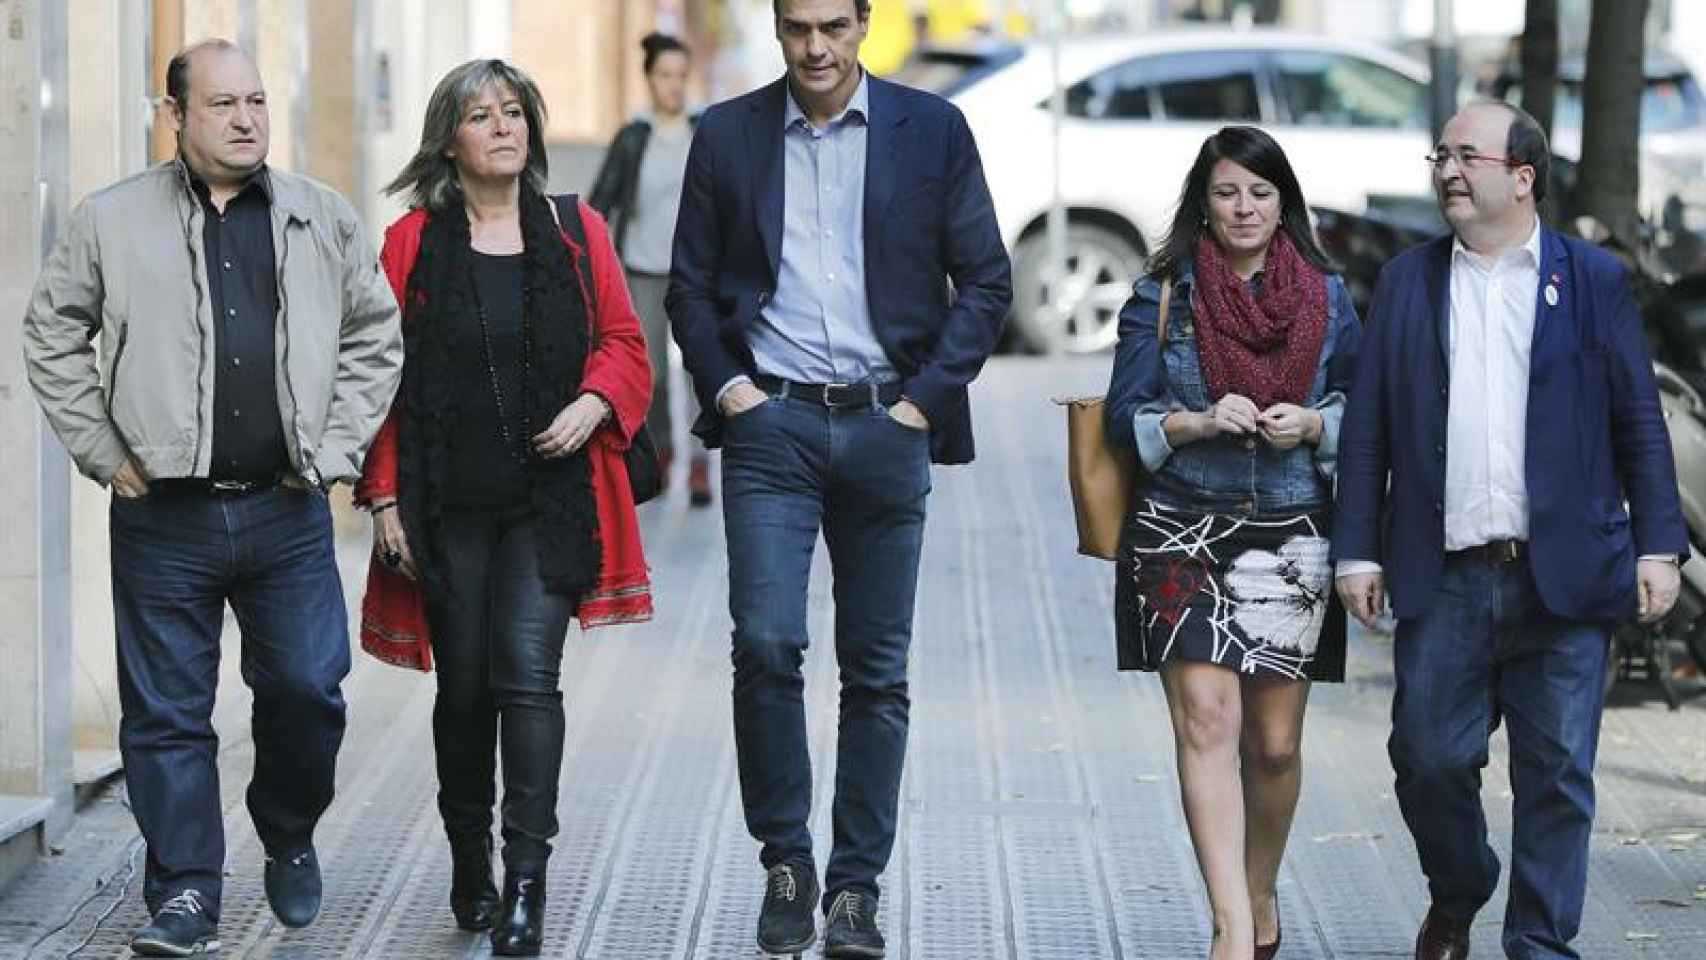 La crisis catalana: Pedro Sánchez se dirige a la sede del PSC en compañía de otros dirigentes socialistas / EFE